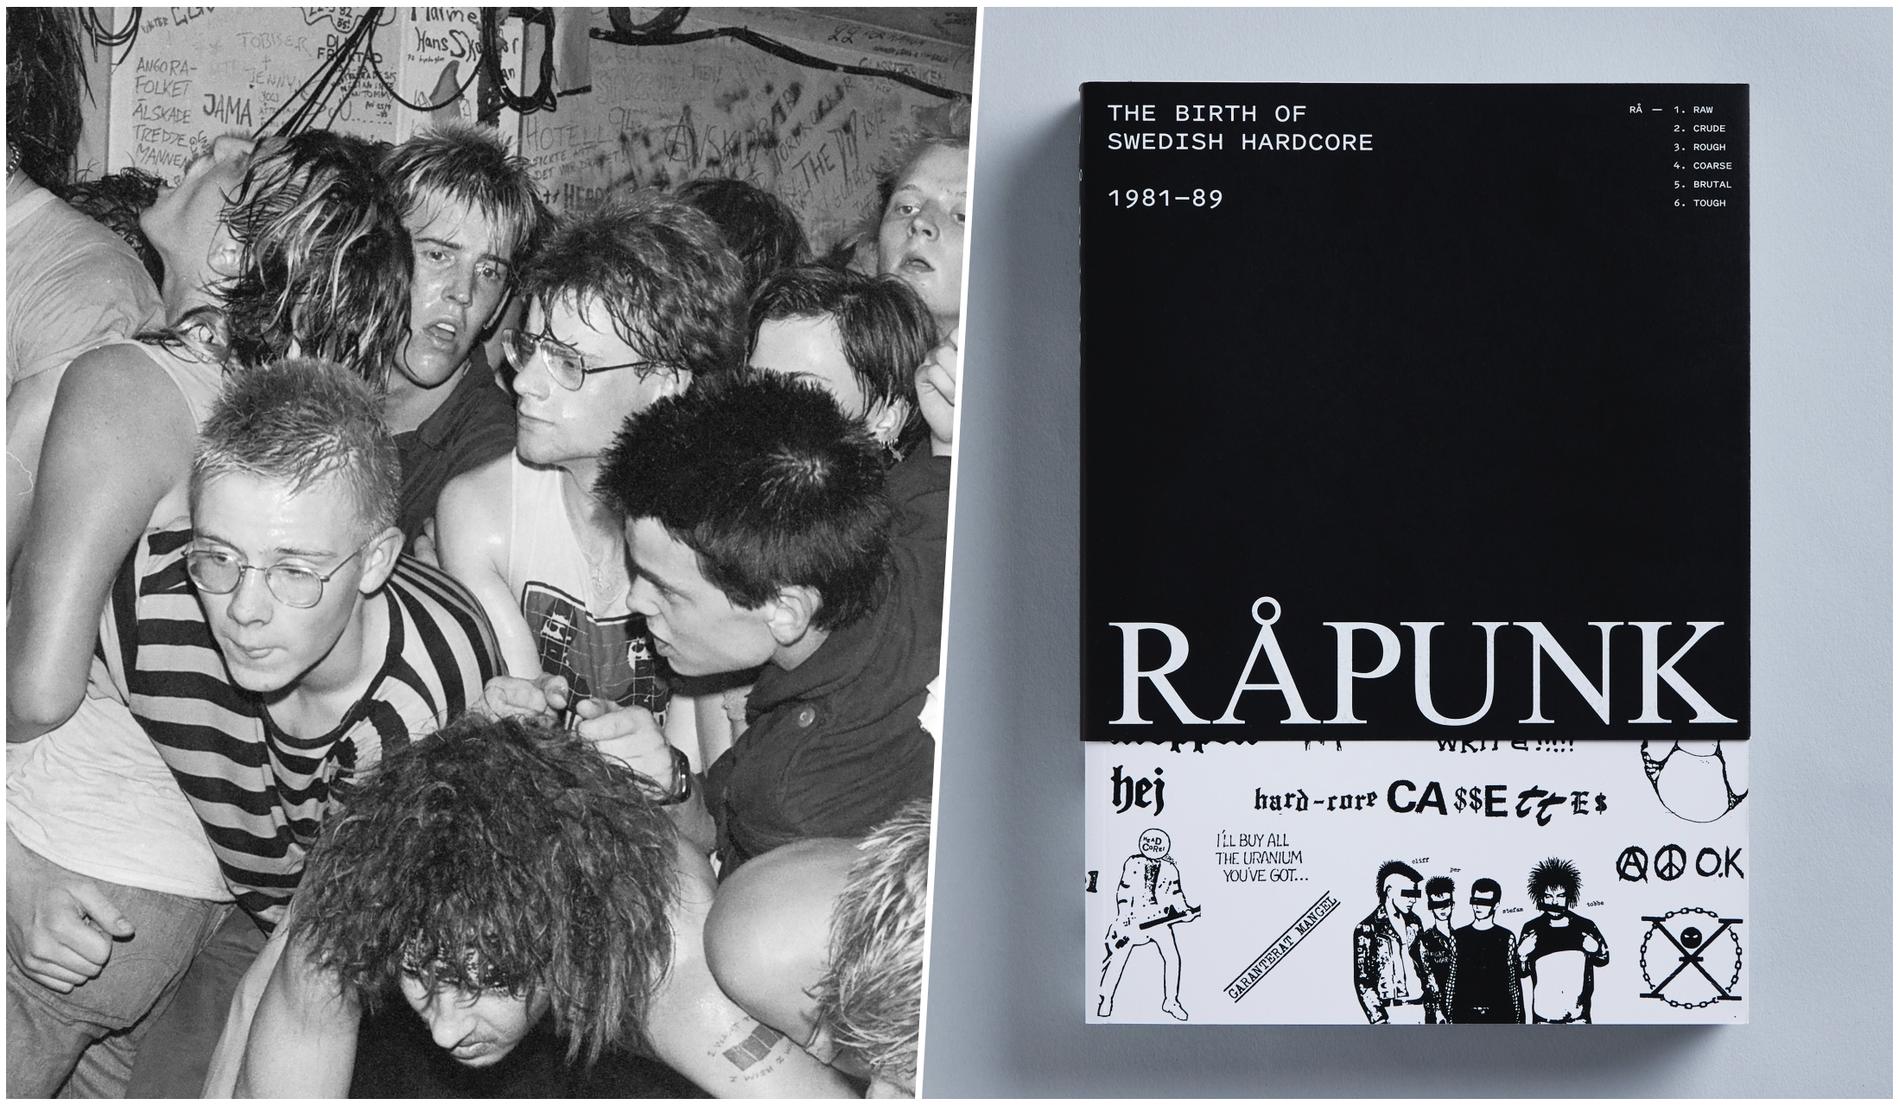 Boken ”Råpunk: The birth of Swedish hardcore 1981-89” dokumenterar den svenska råpunkscenen under 80-talet med nedslag i band som Anti-Cimex, Mob 47 och Avskum. 